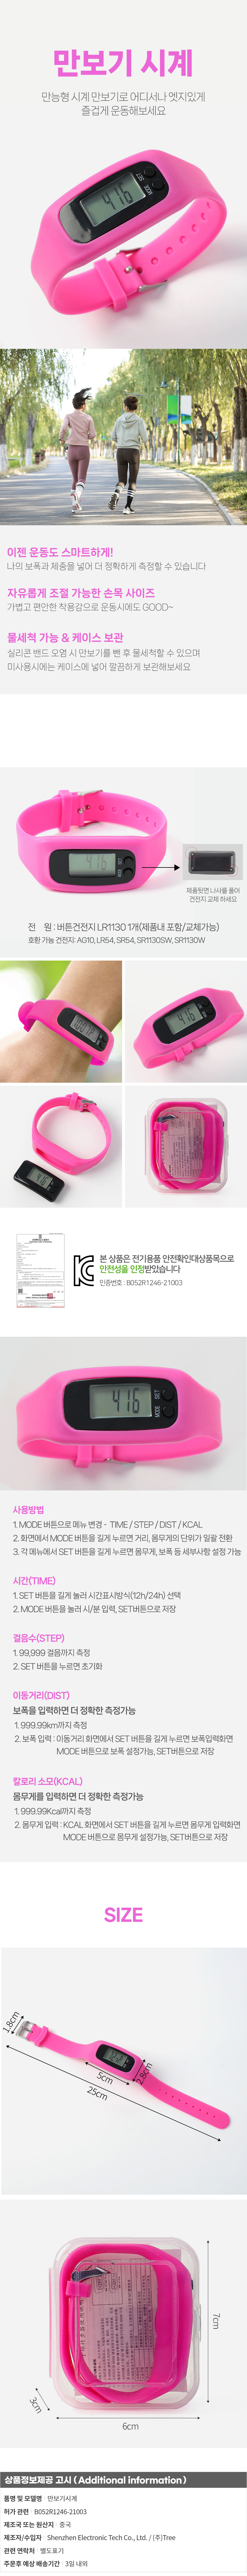 실리콘 만보기 스포츠 디지털 손목 시계 핑크